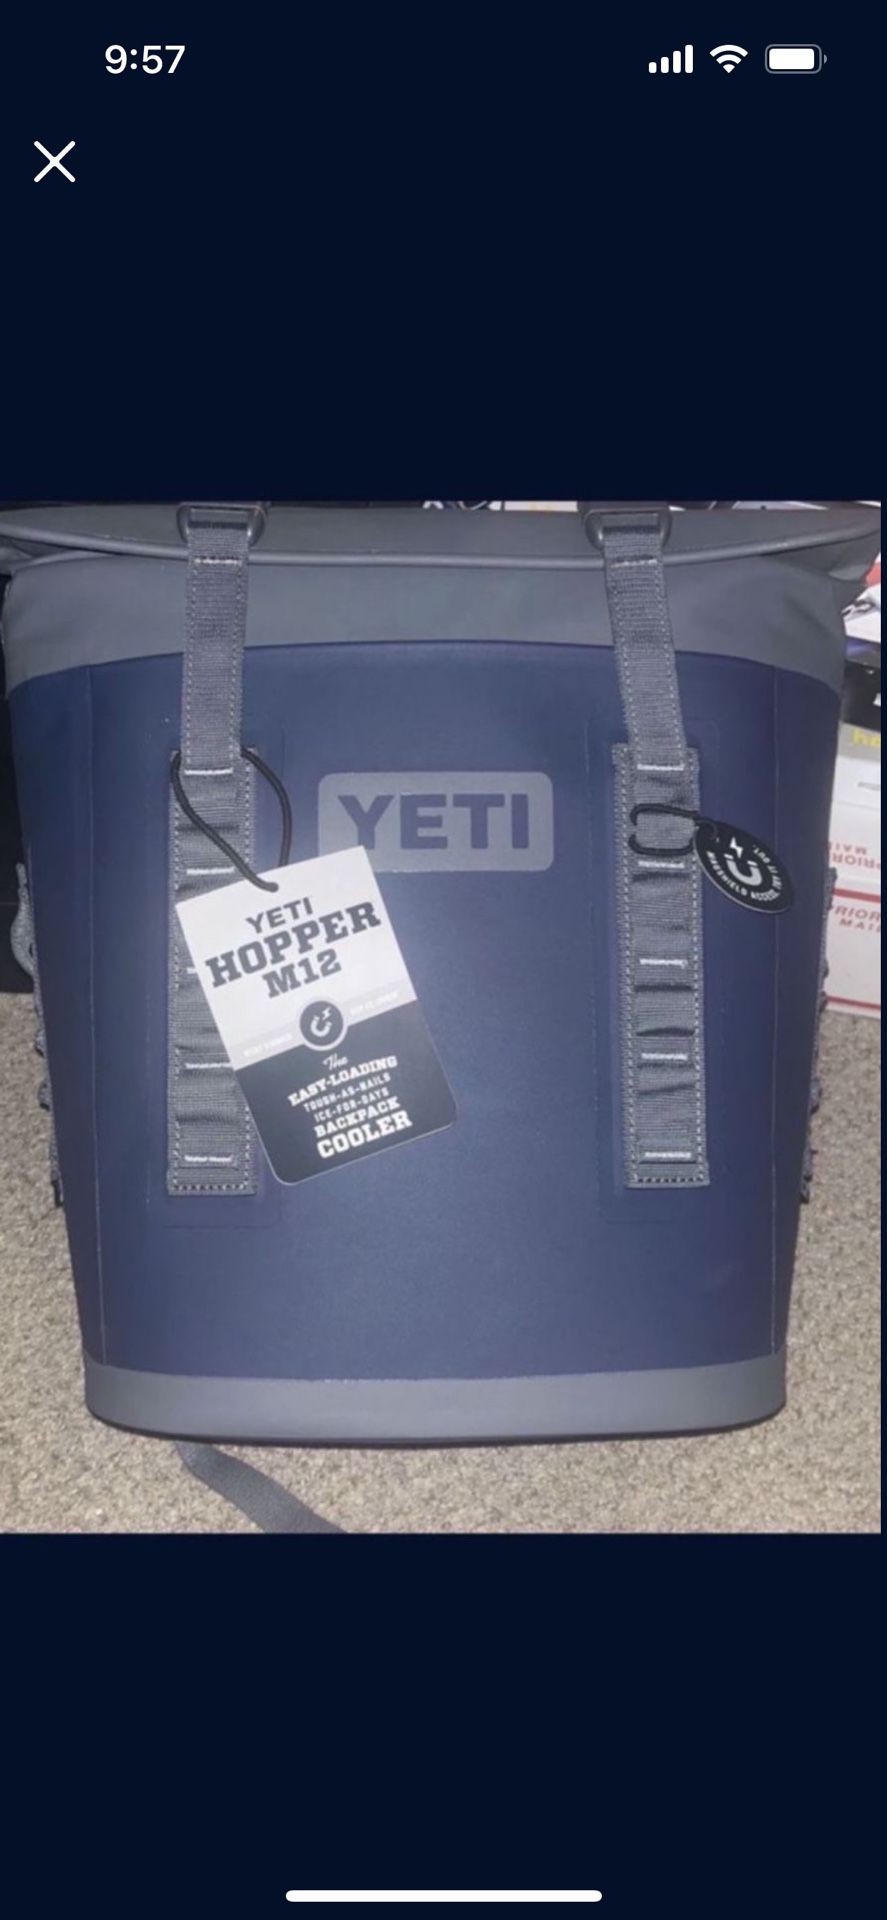 Yeti Hopper M12 Soft Backpack Cooler Navy